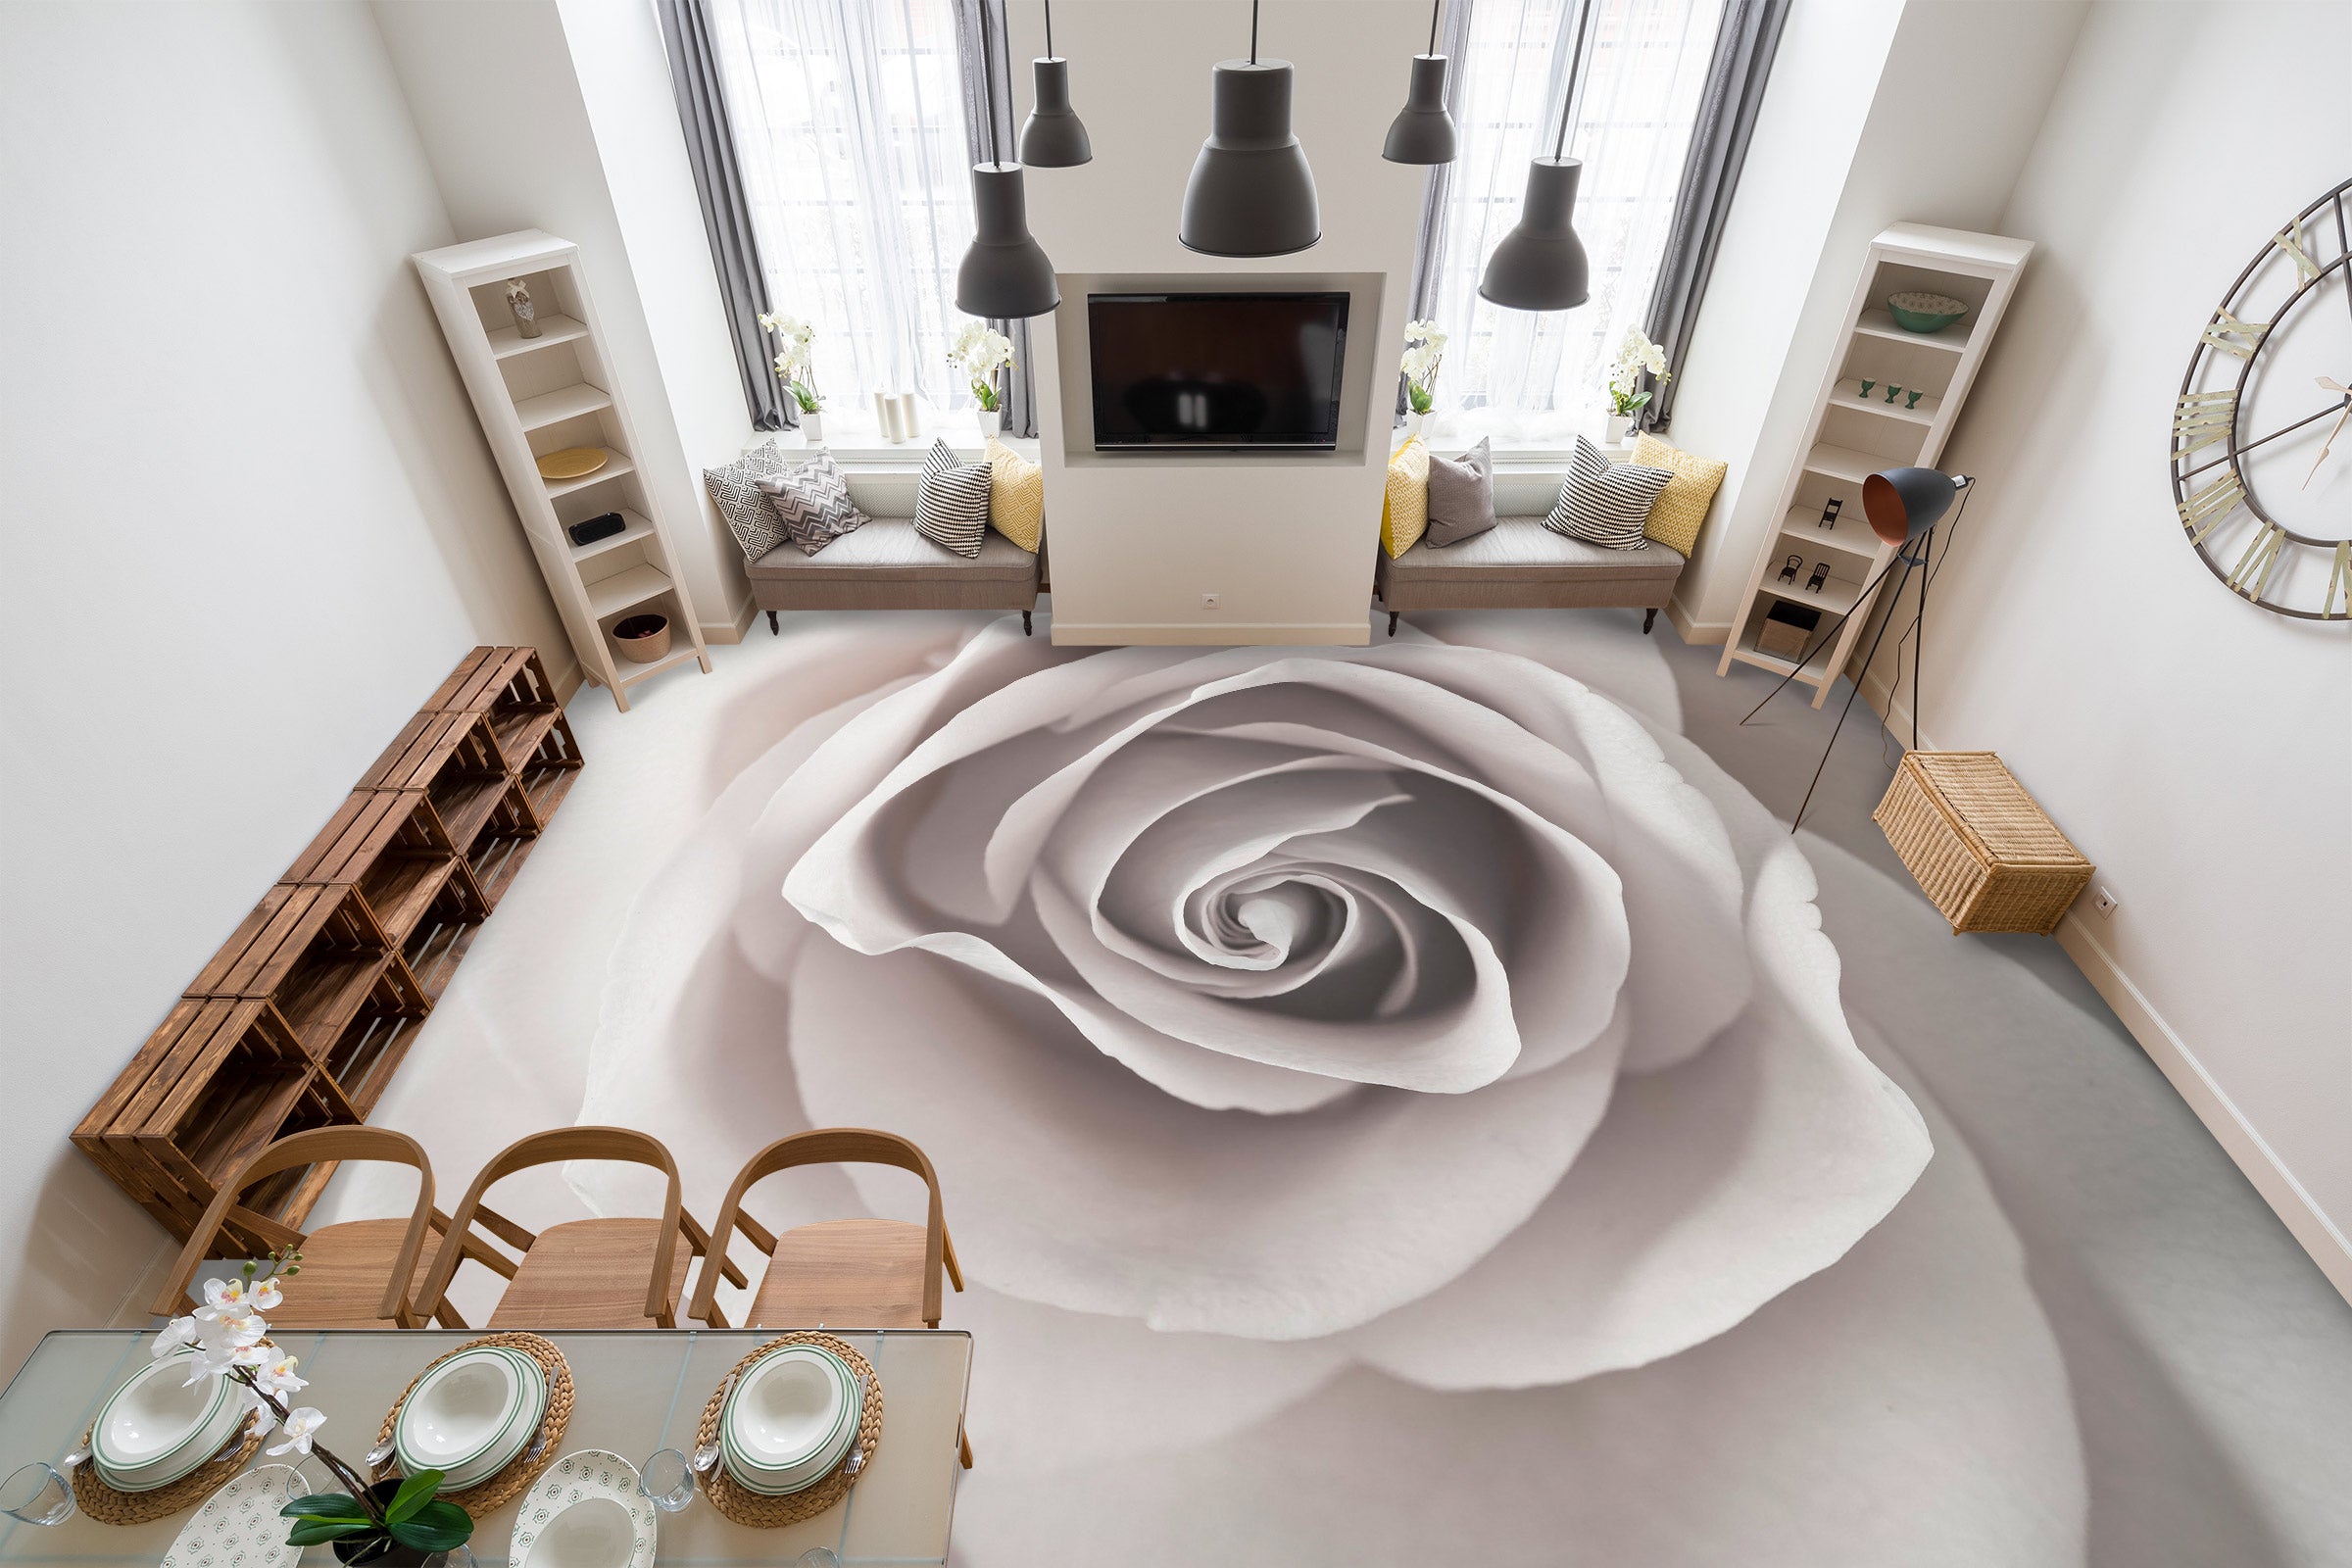 3D Rose Pattern 9844 Assaf Frank Floor Mural